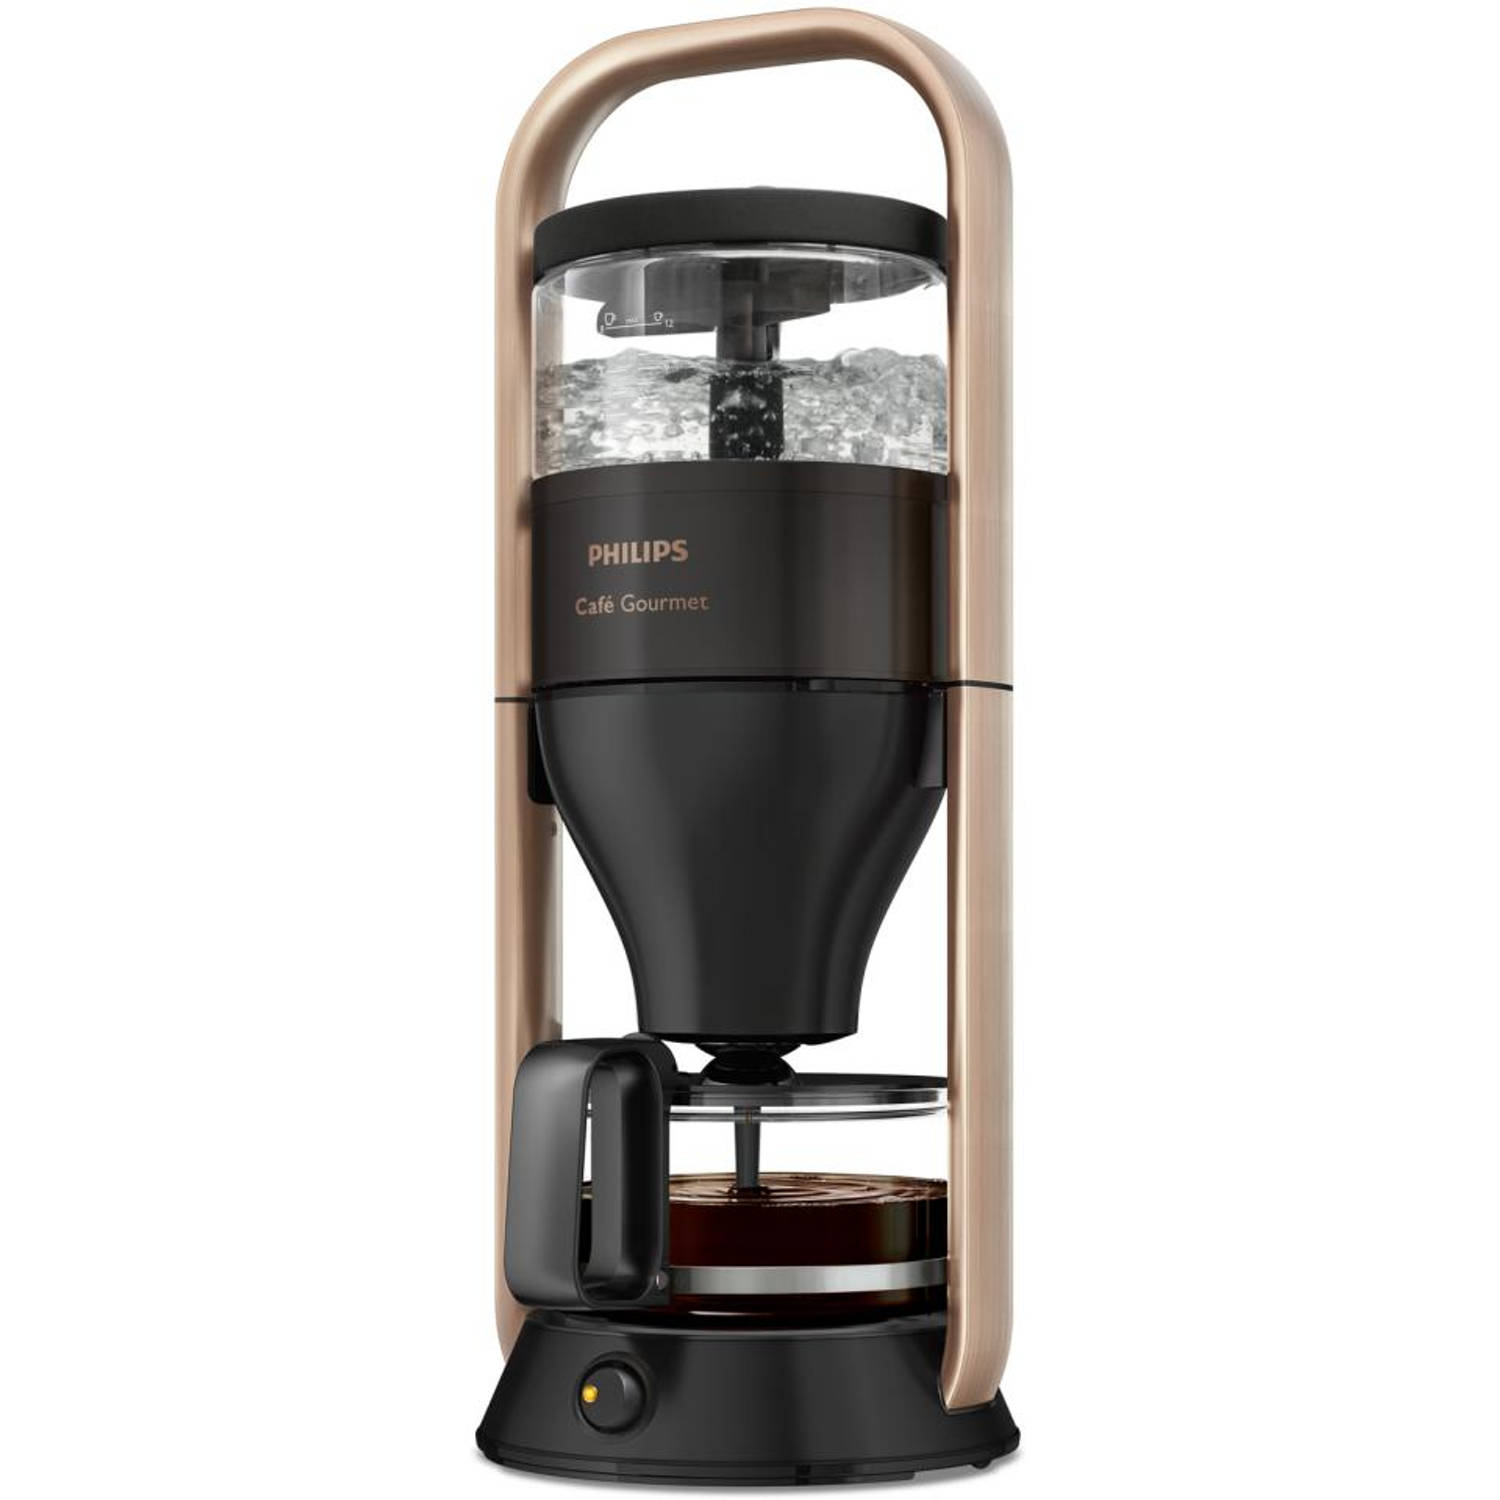 bros een beetje vergelijking Philips filterkoffiezetapparaat Café Gourmet HD5408/70 - zwart | Blokker